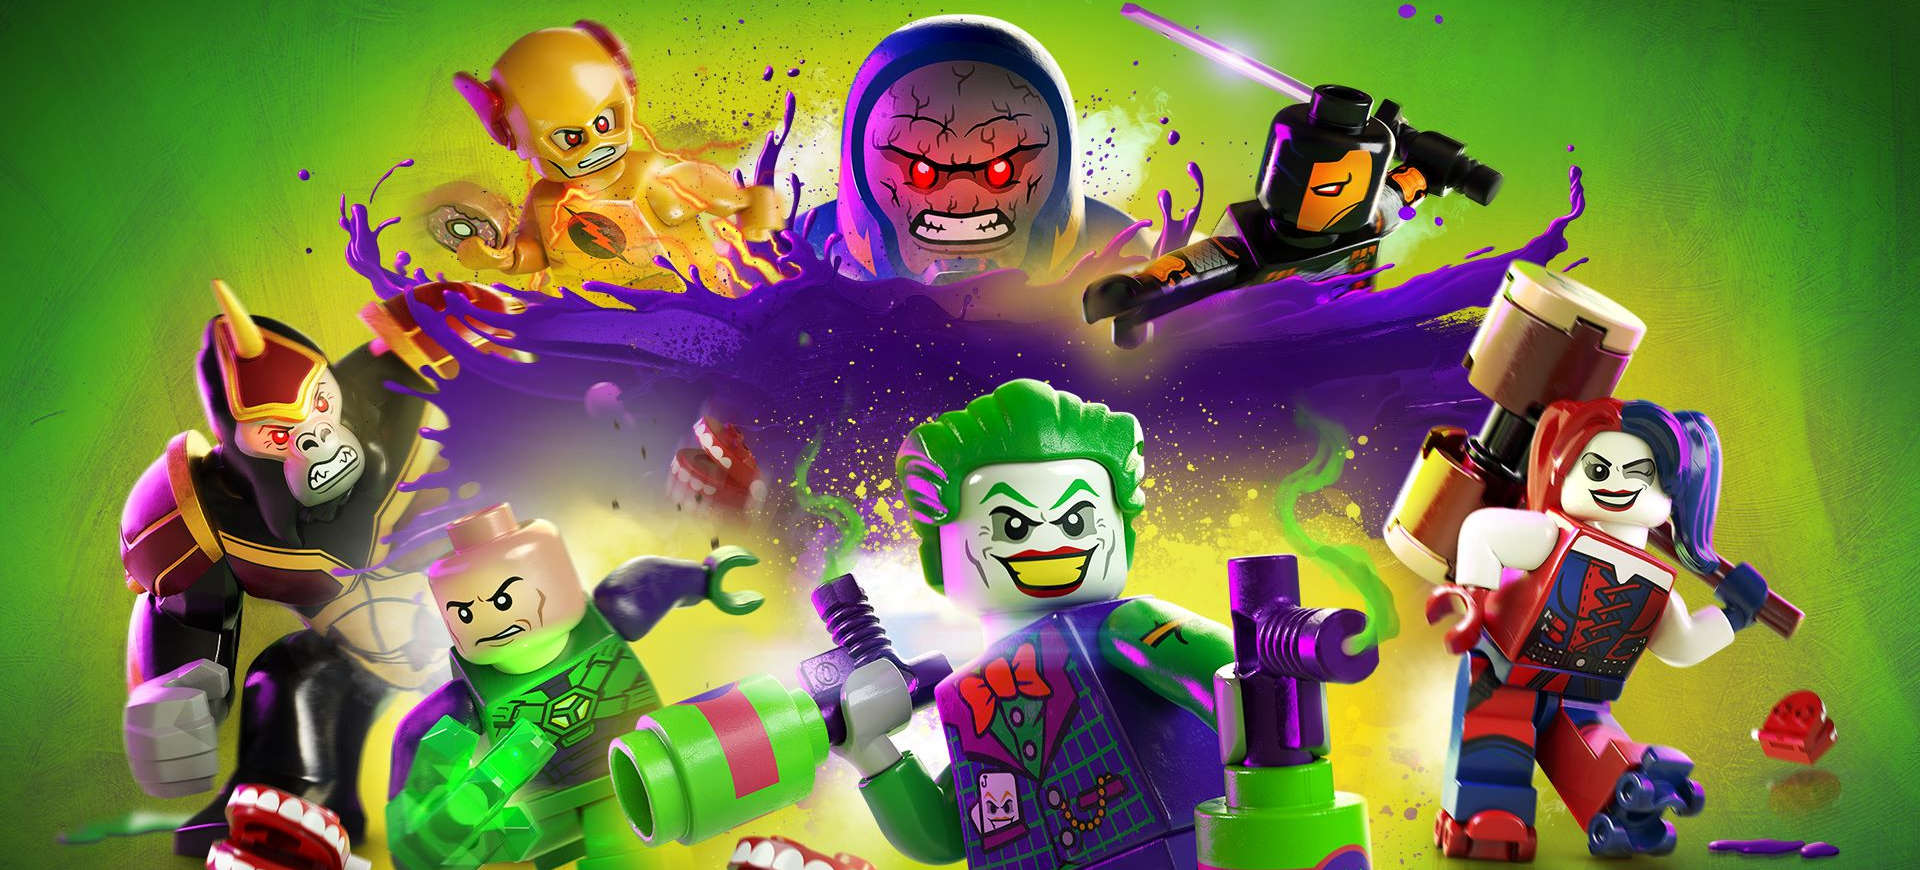 LEGO DC Super-Villains